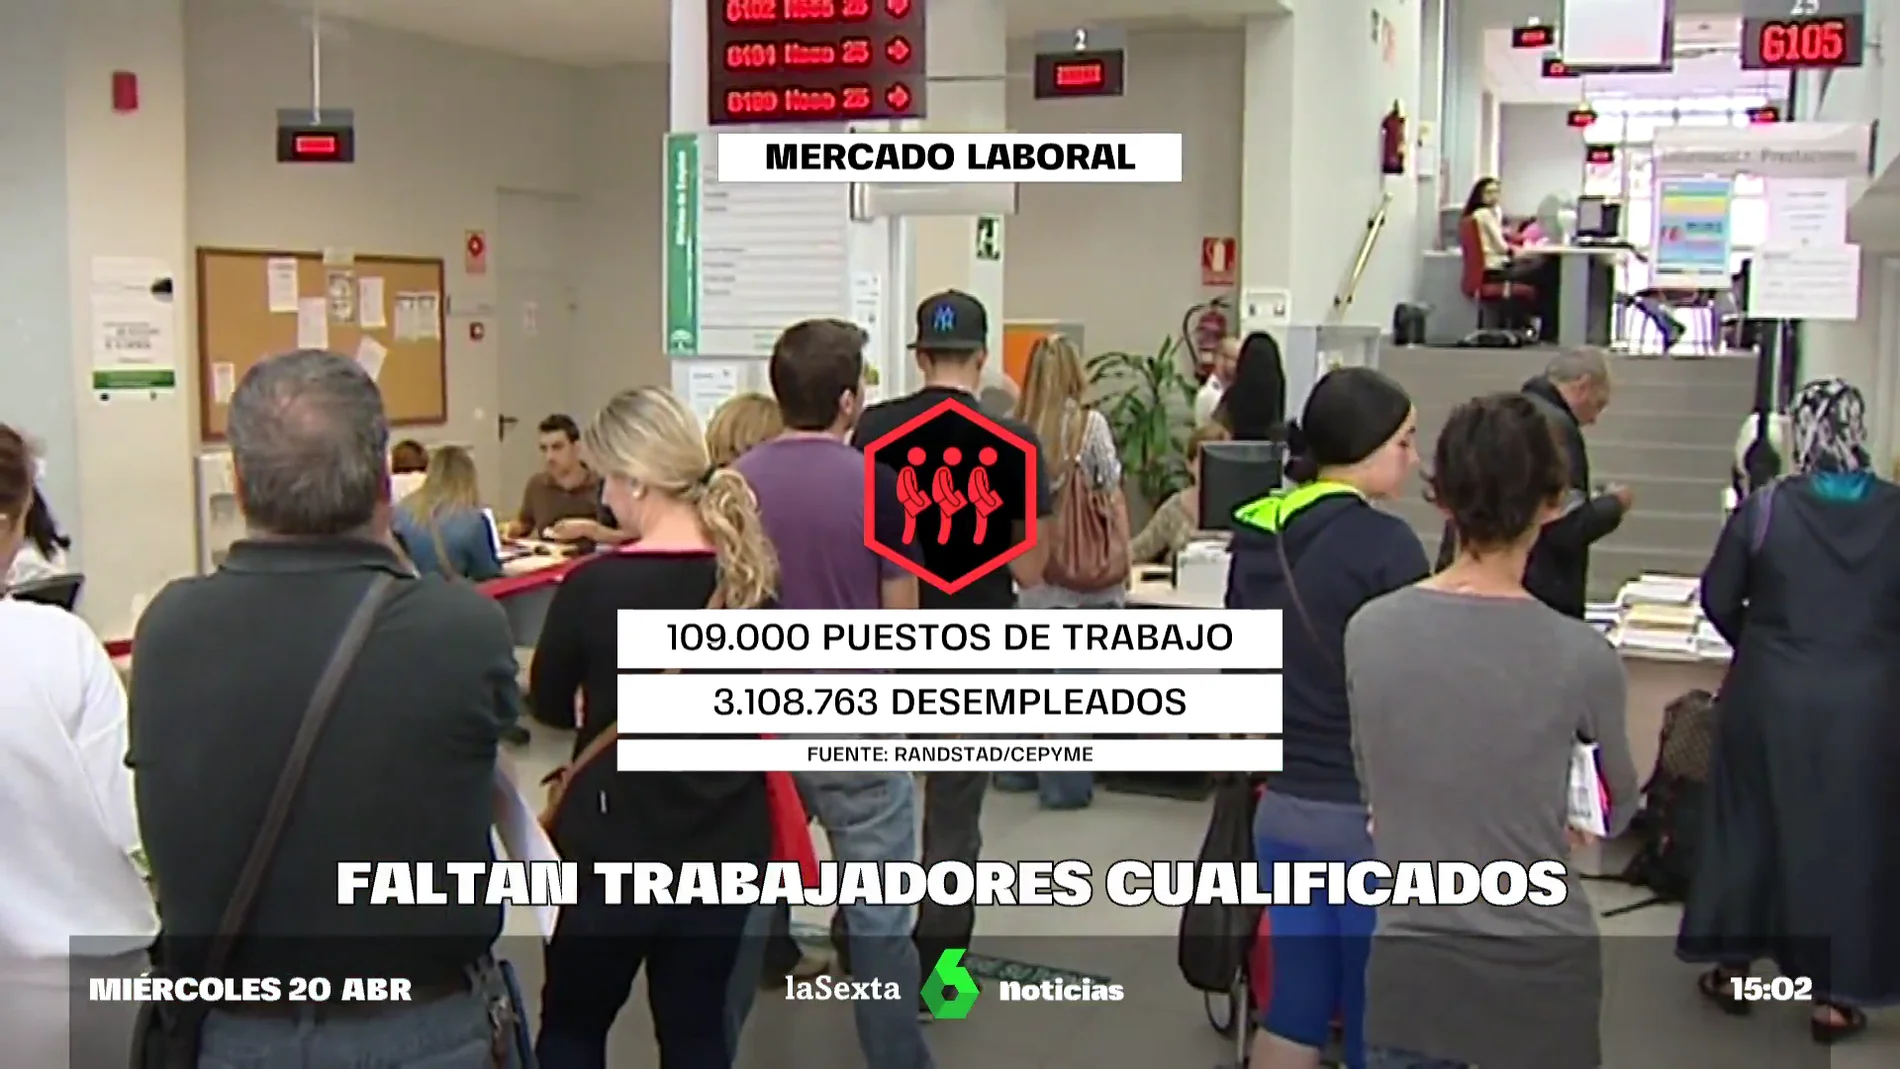  Faltan trabajadores cualificados: más de 109.000 empleos sin cubrir en España